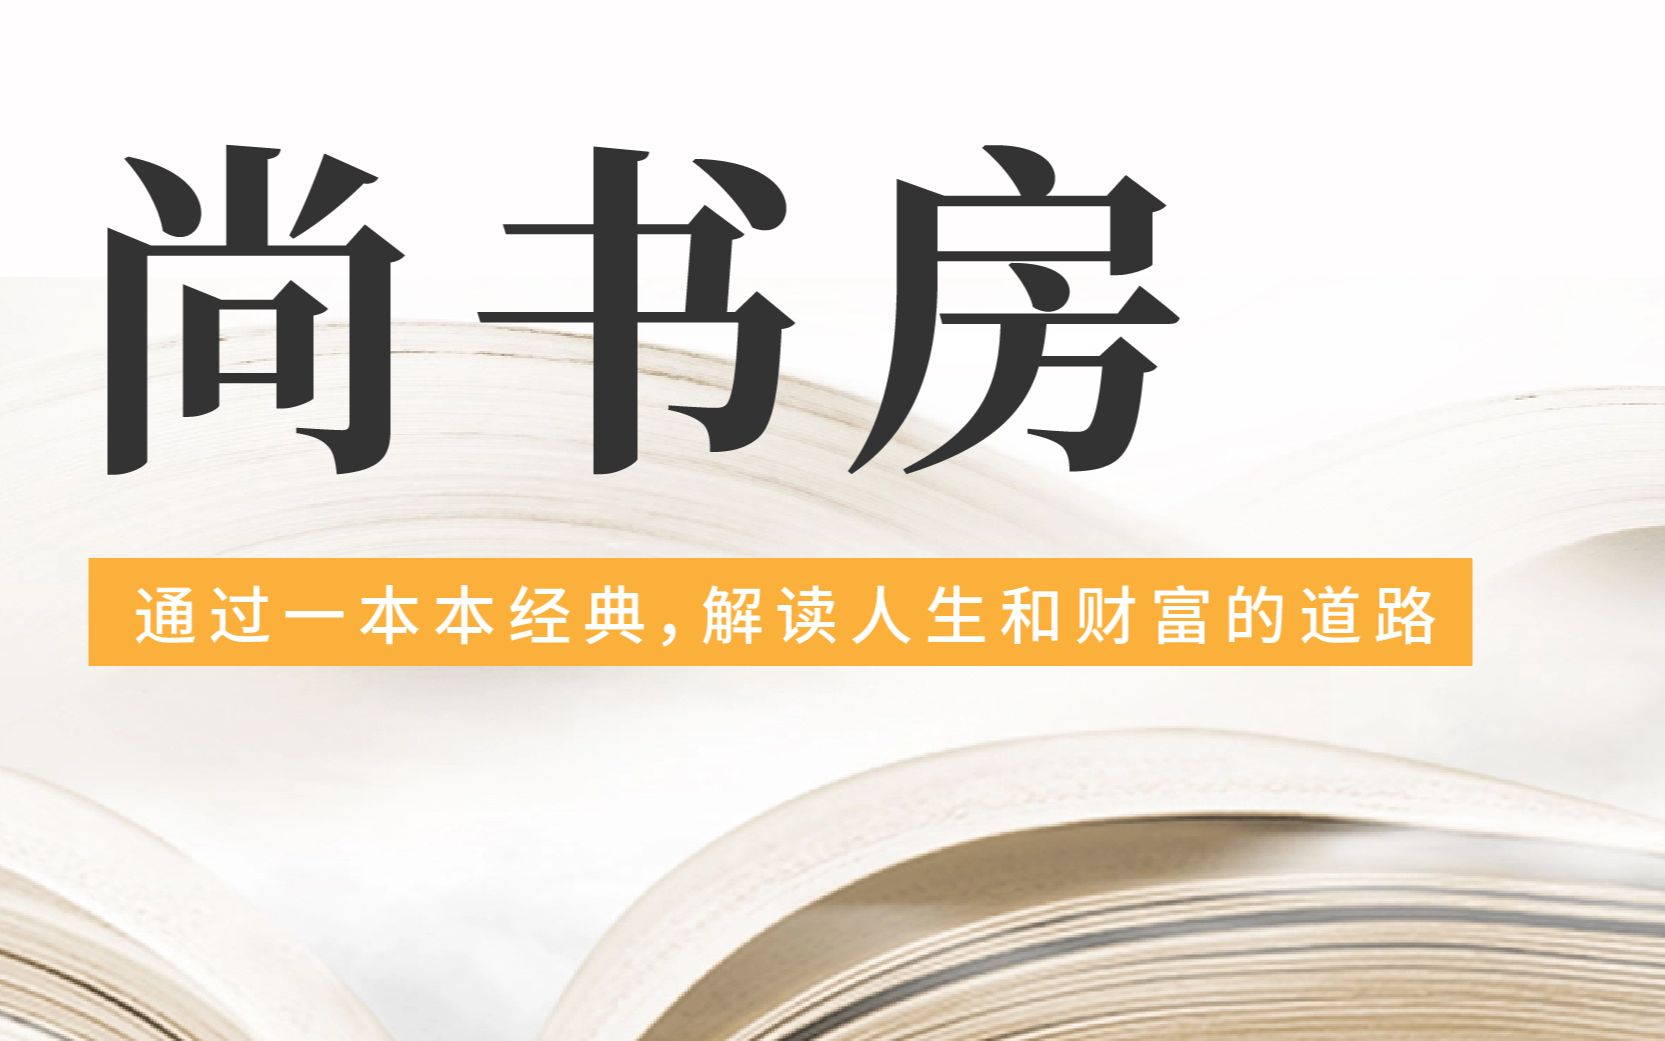 尚书坊教育培训机构企业文化形象策划设计-深圳市启橙广告有限公司